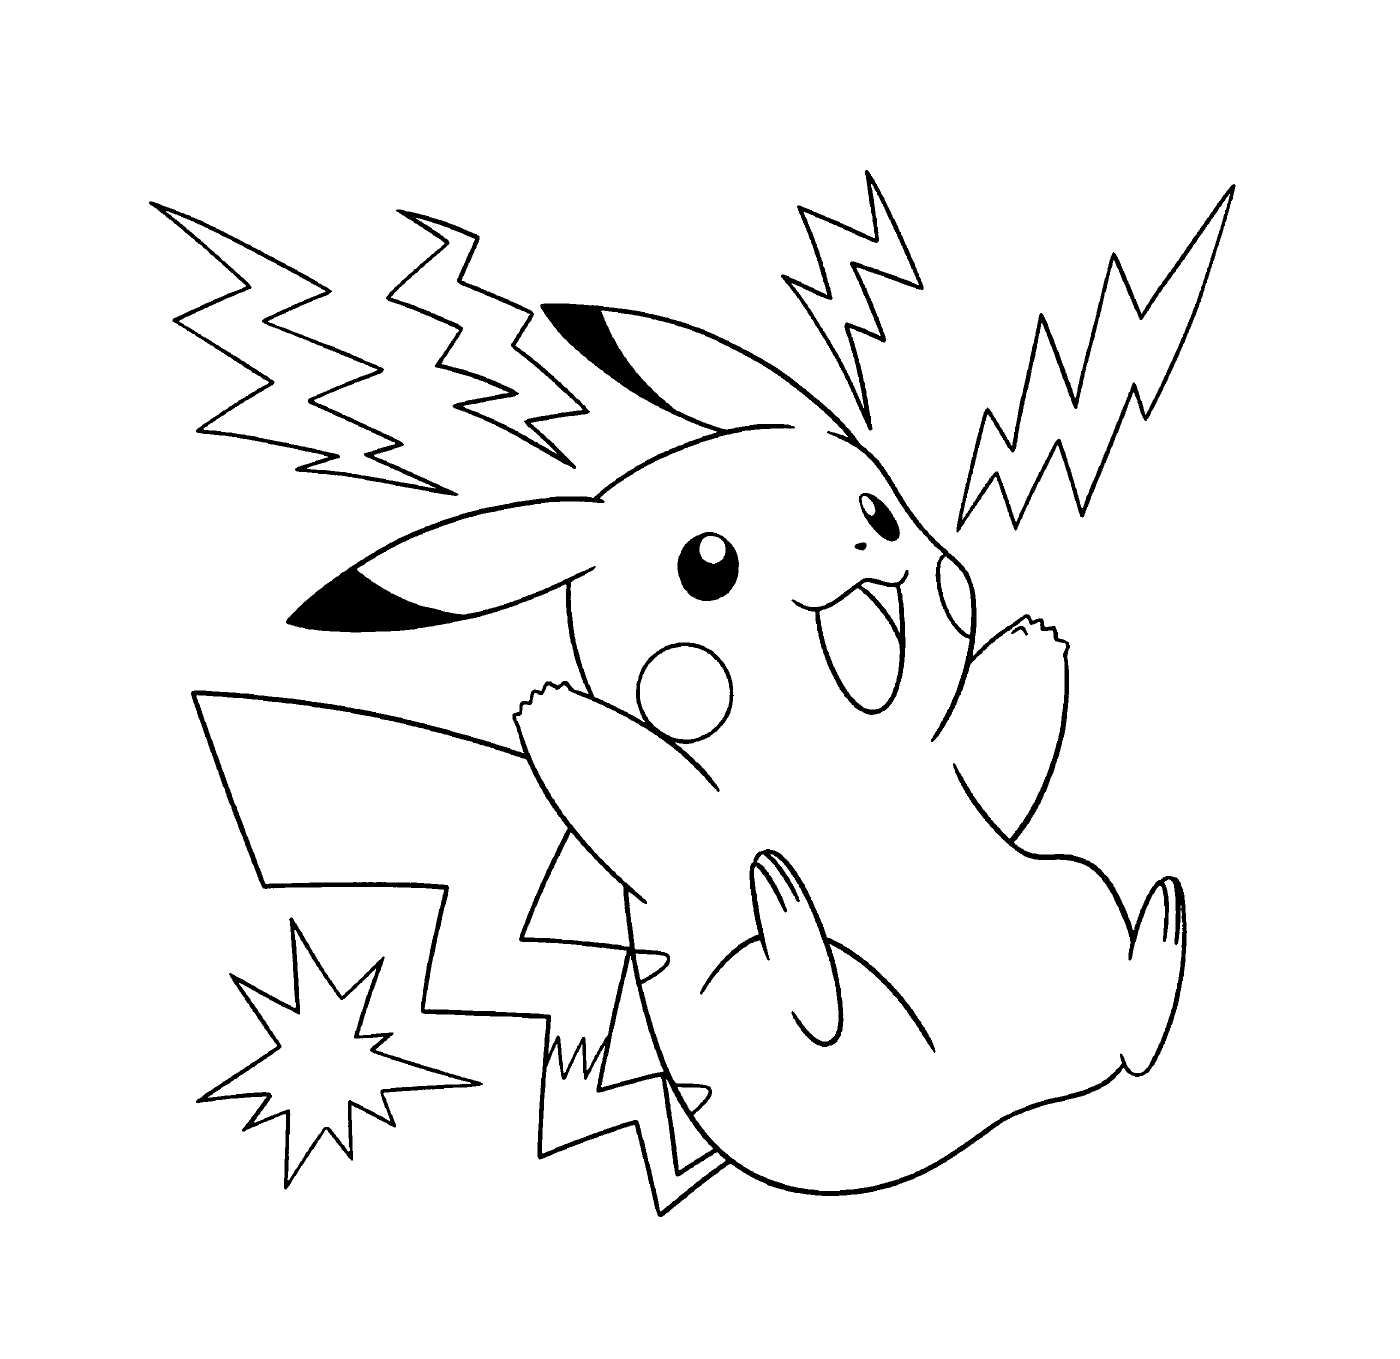  Pikachu, elektrisch und energetisch 